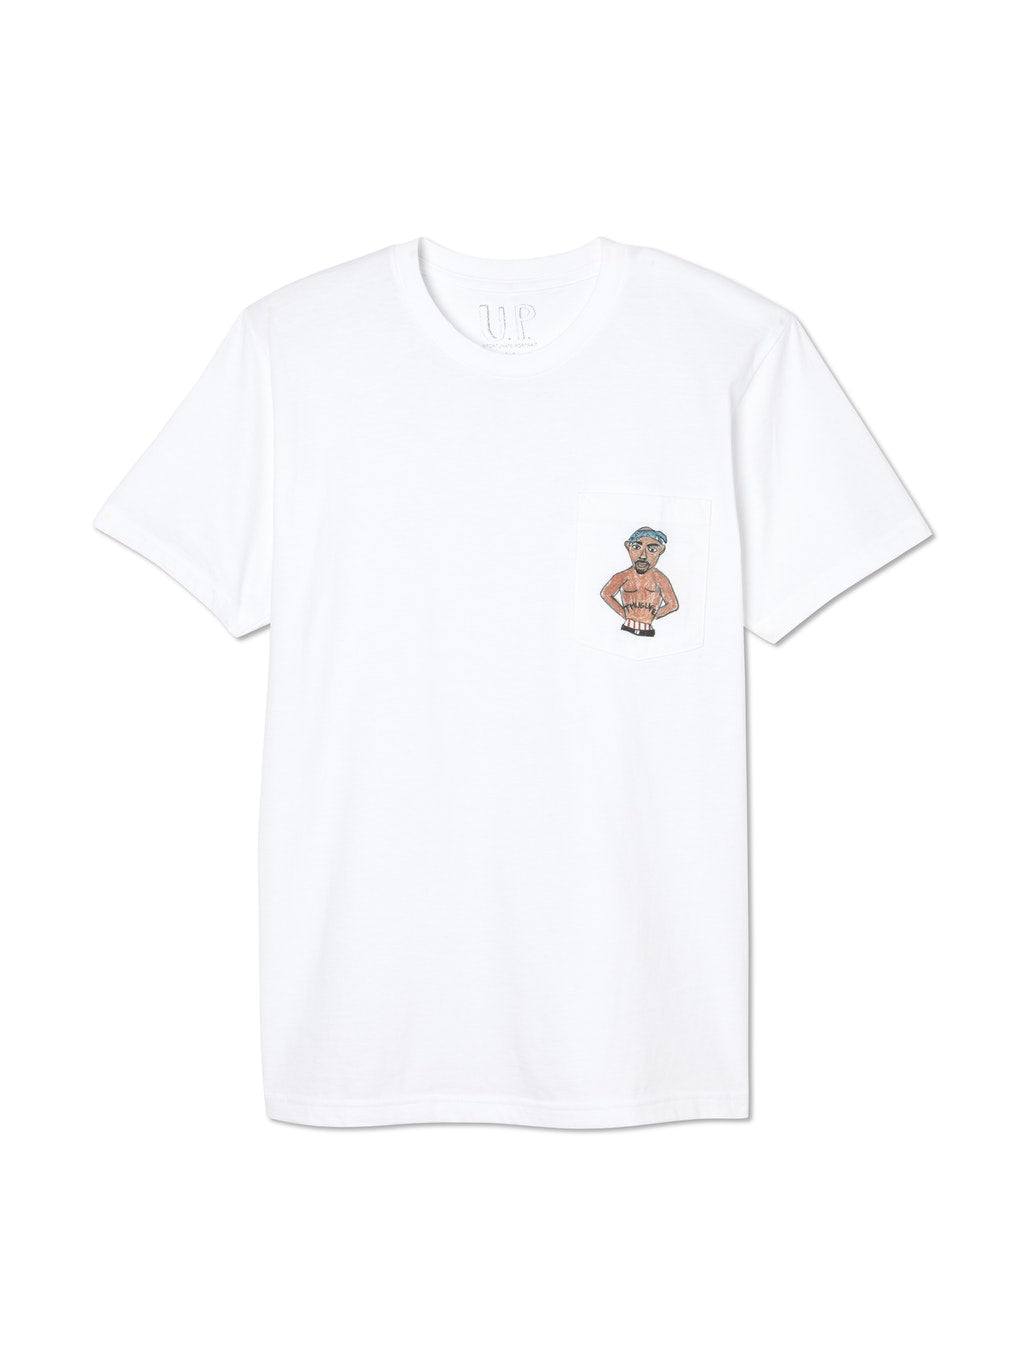 TuPocket Pocket T-Shirt